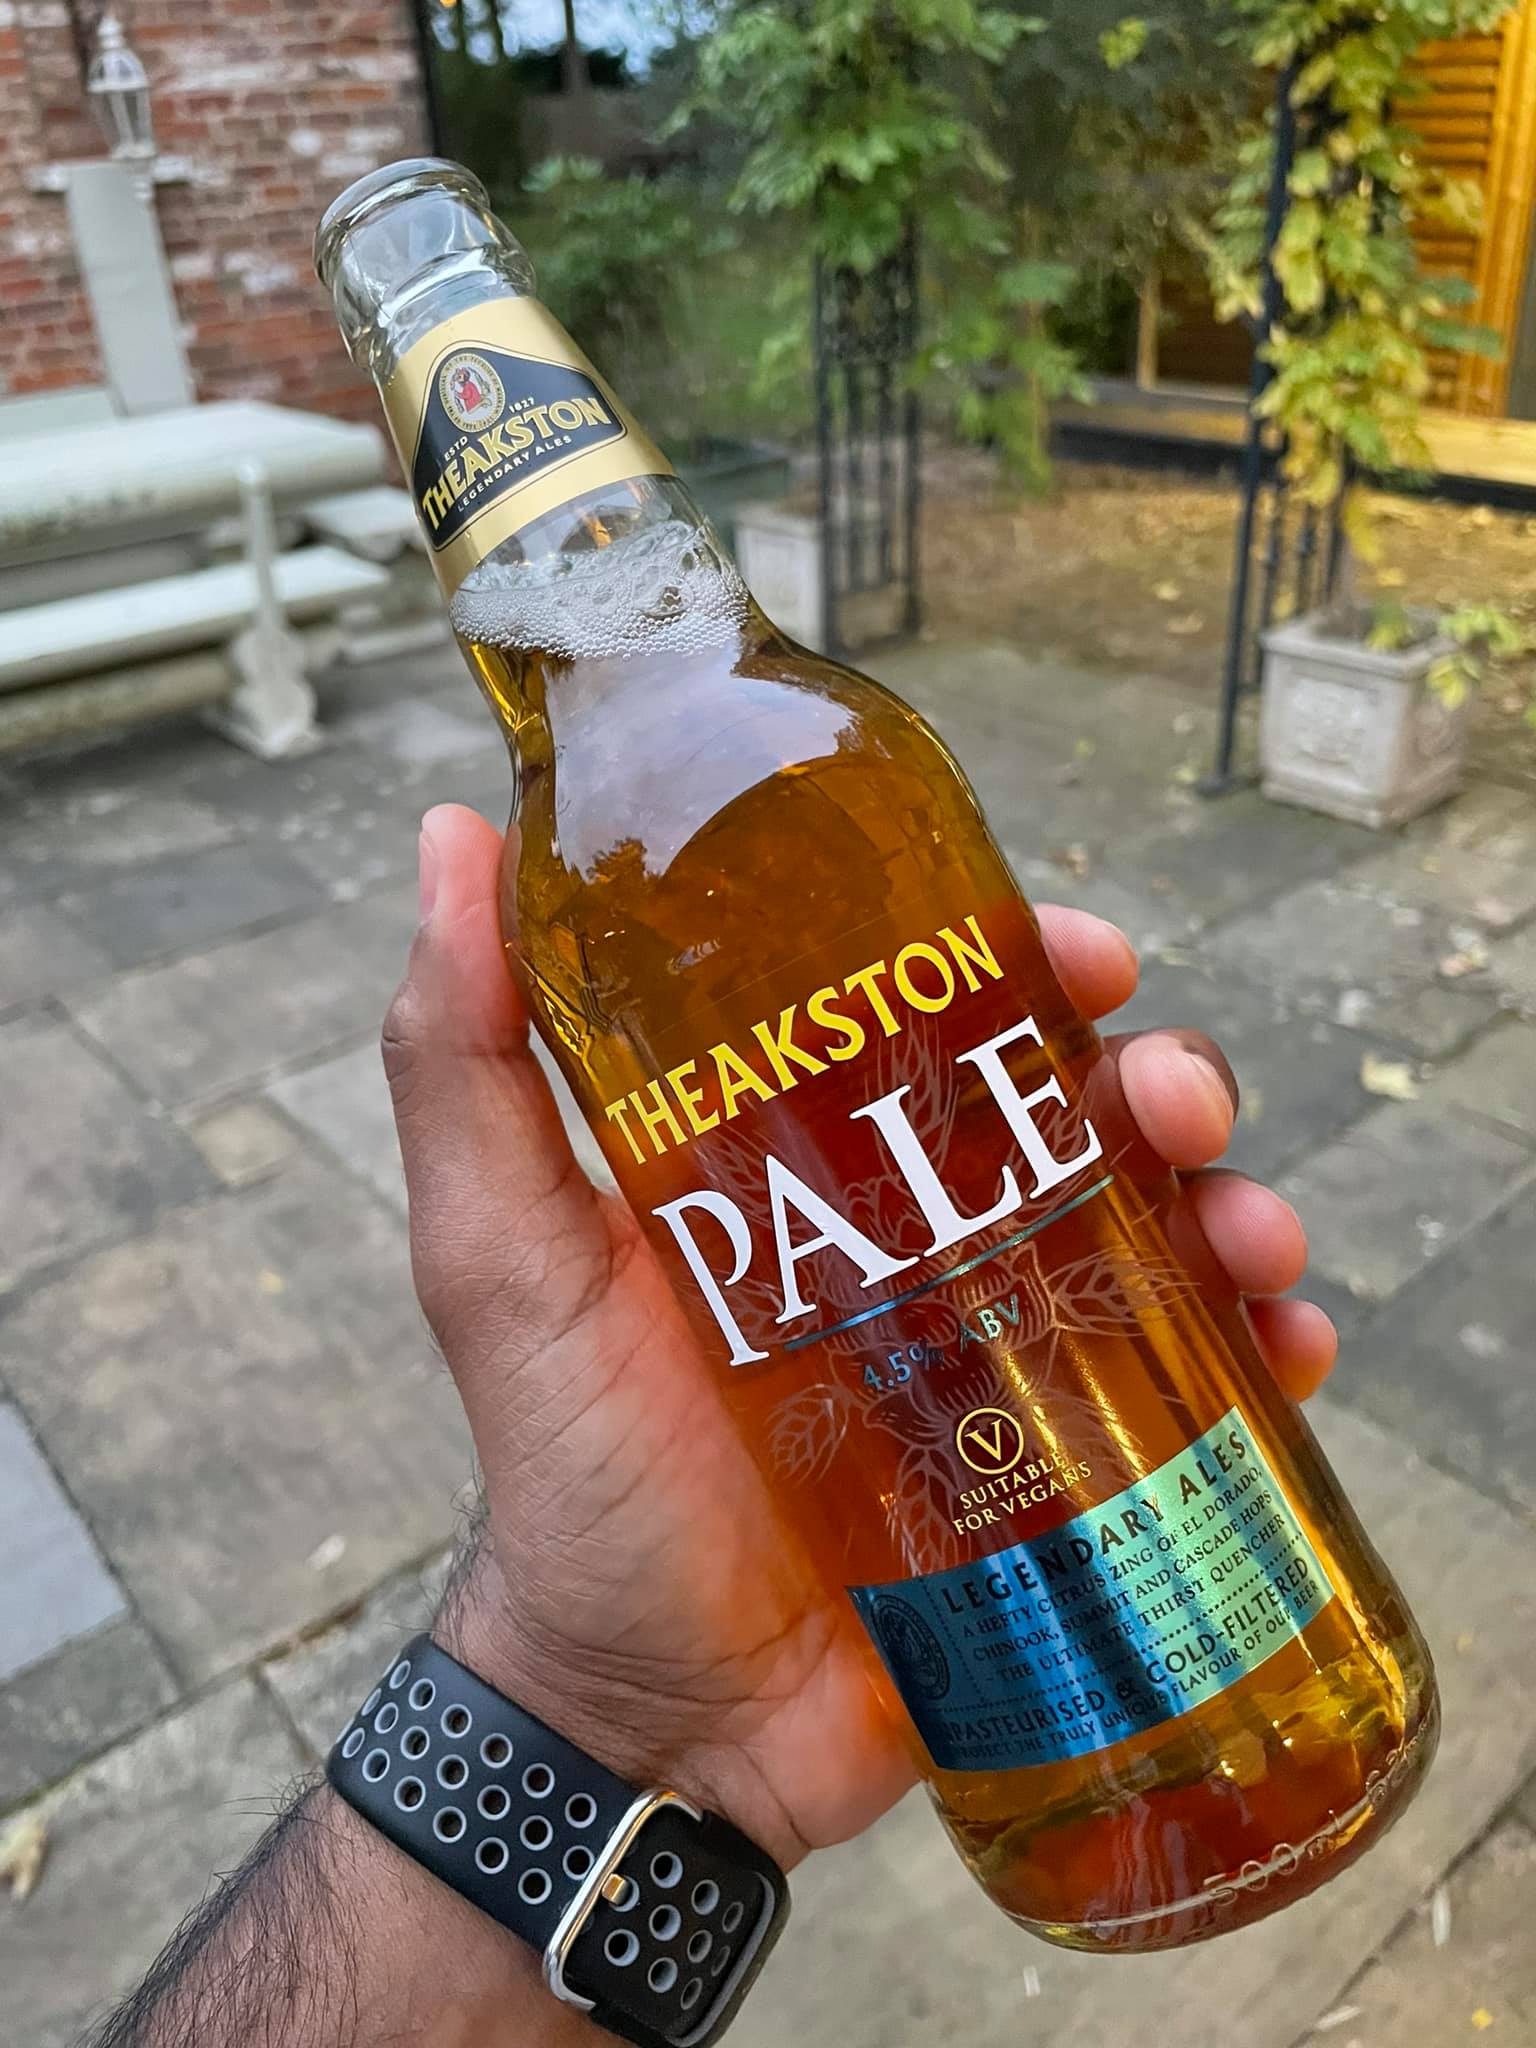 Theakston Pale Legendary Ales
